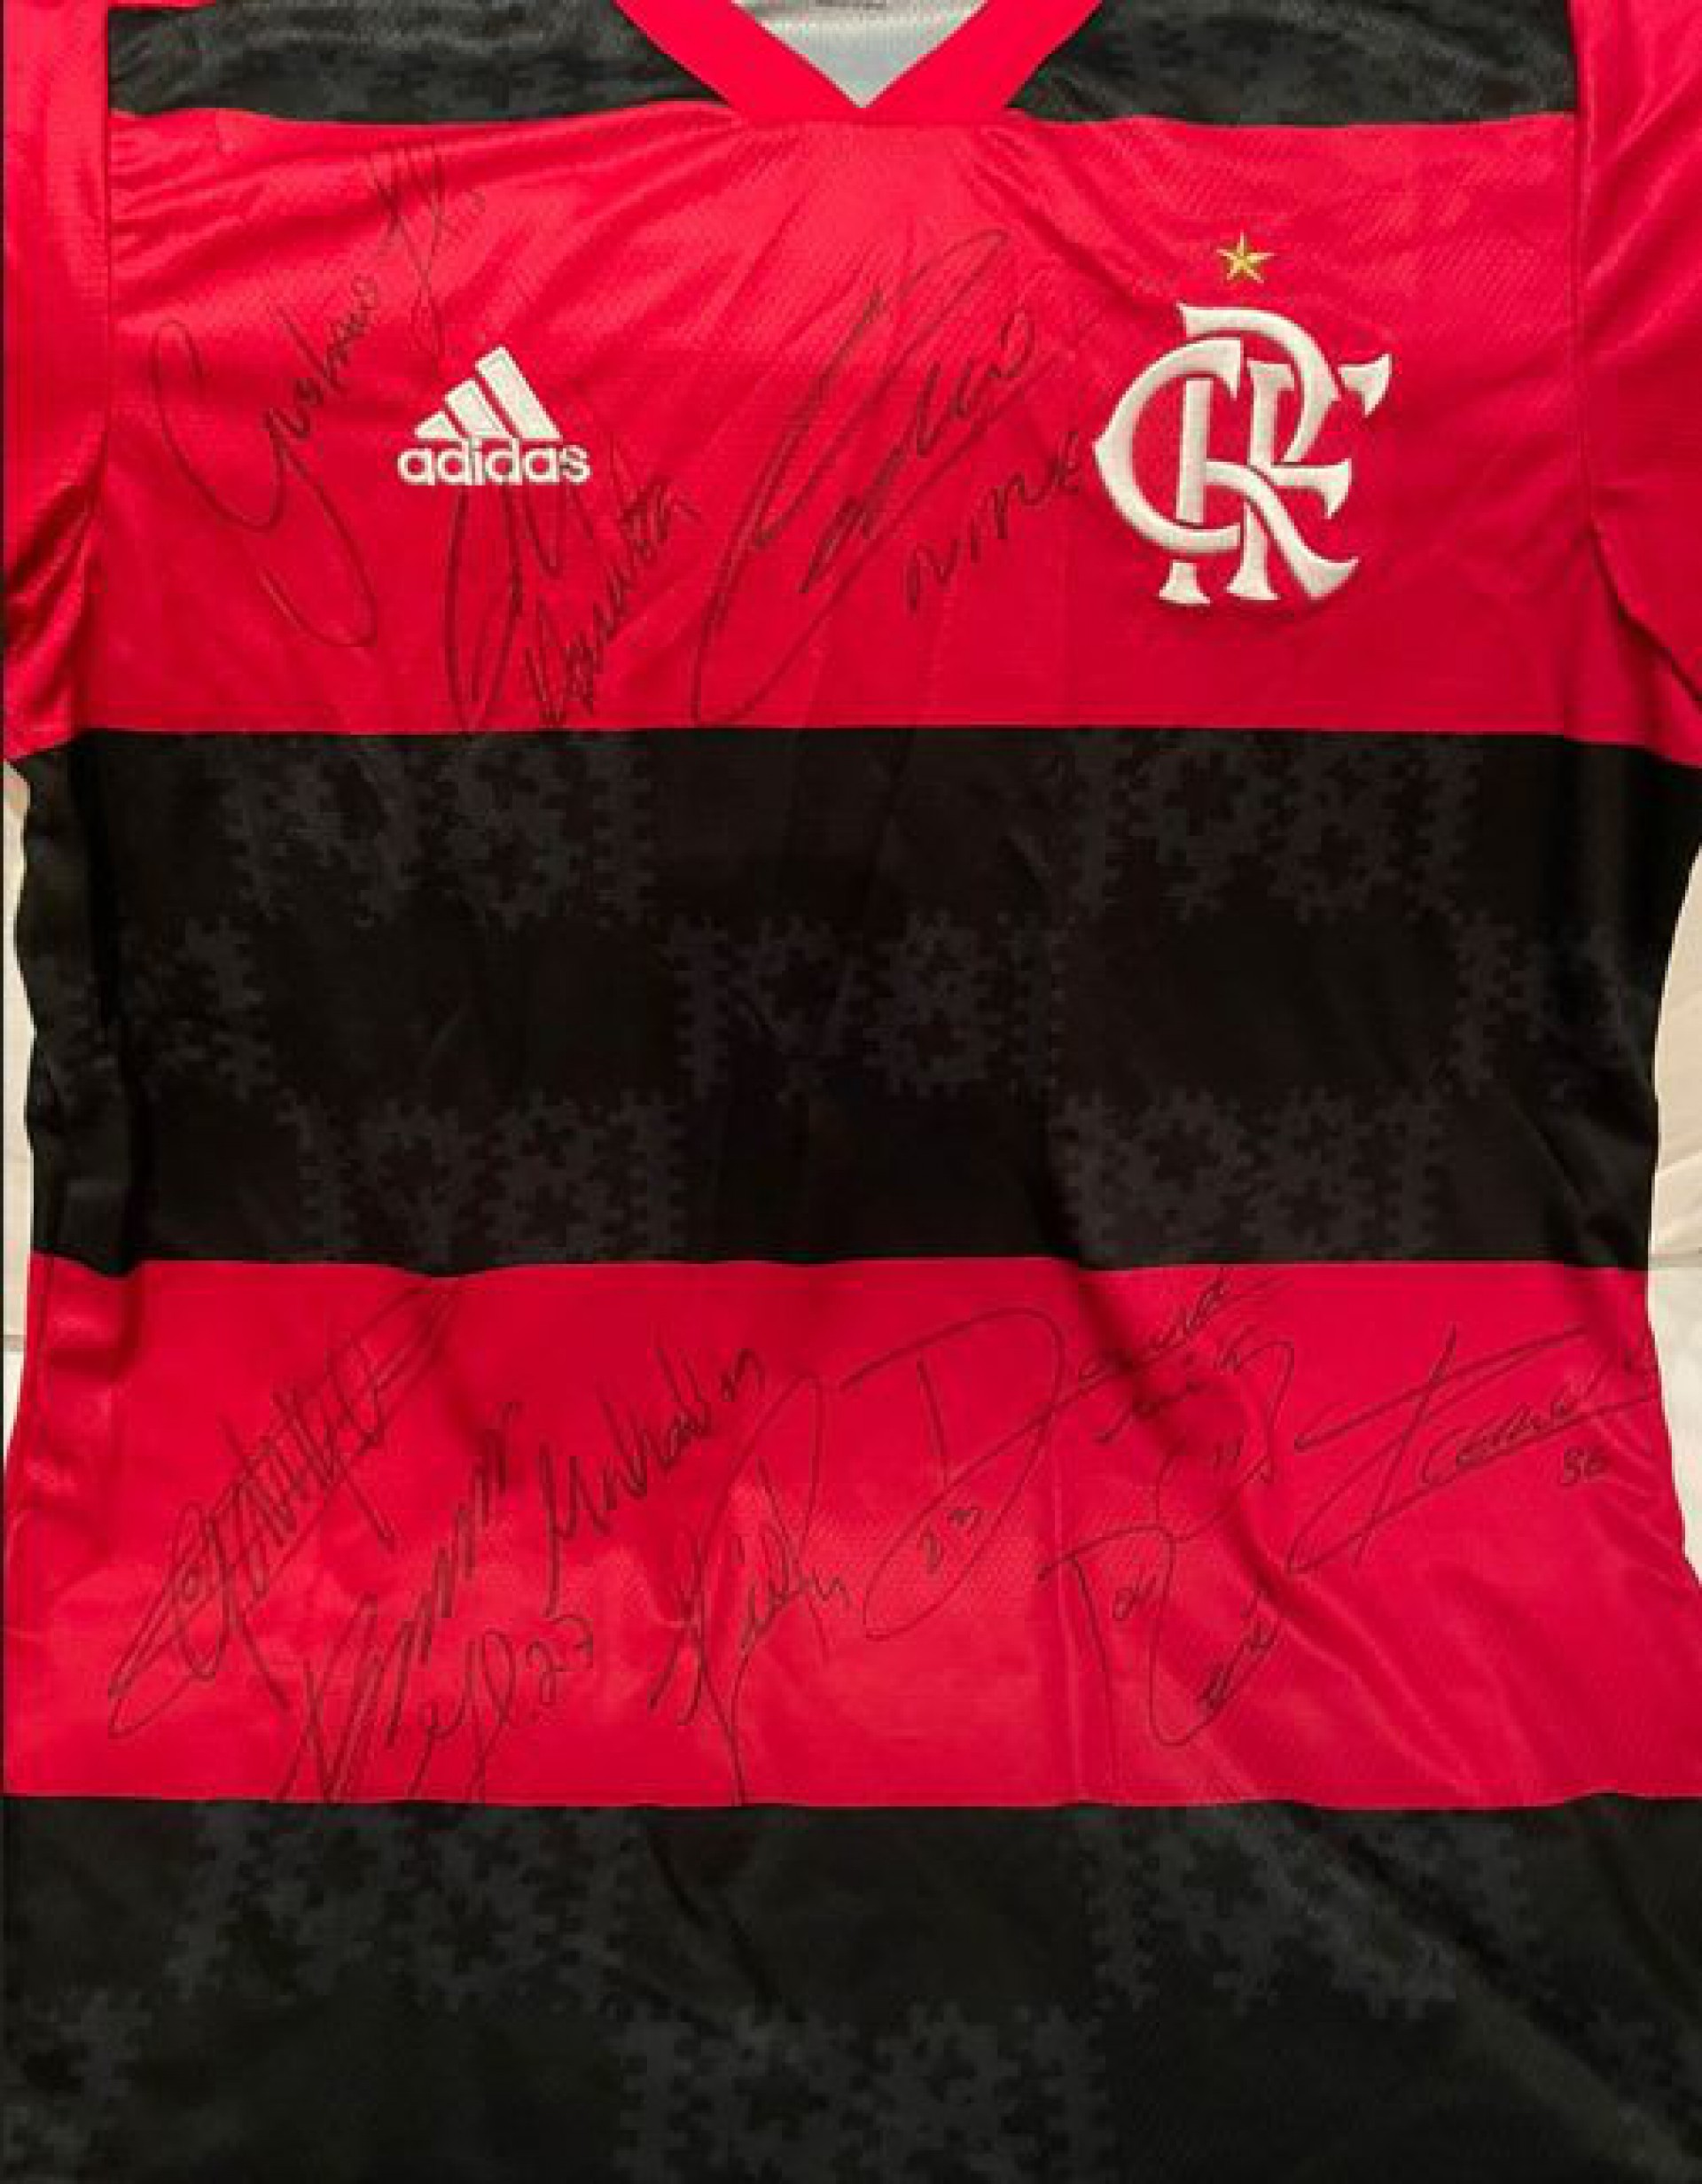 Camisa autografada foi doada pela presidência do Flamengo